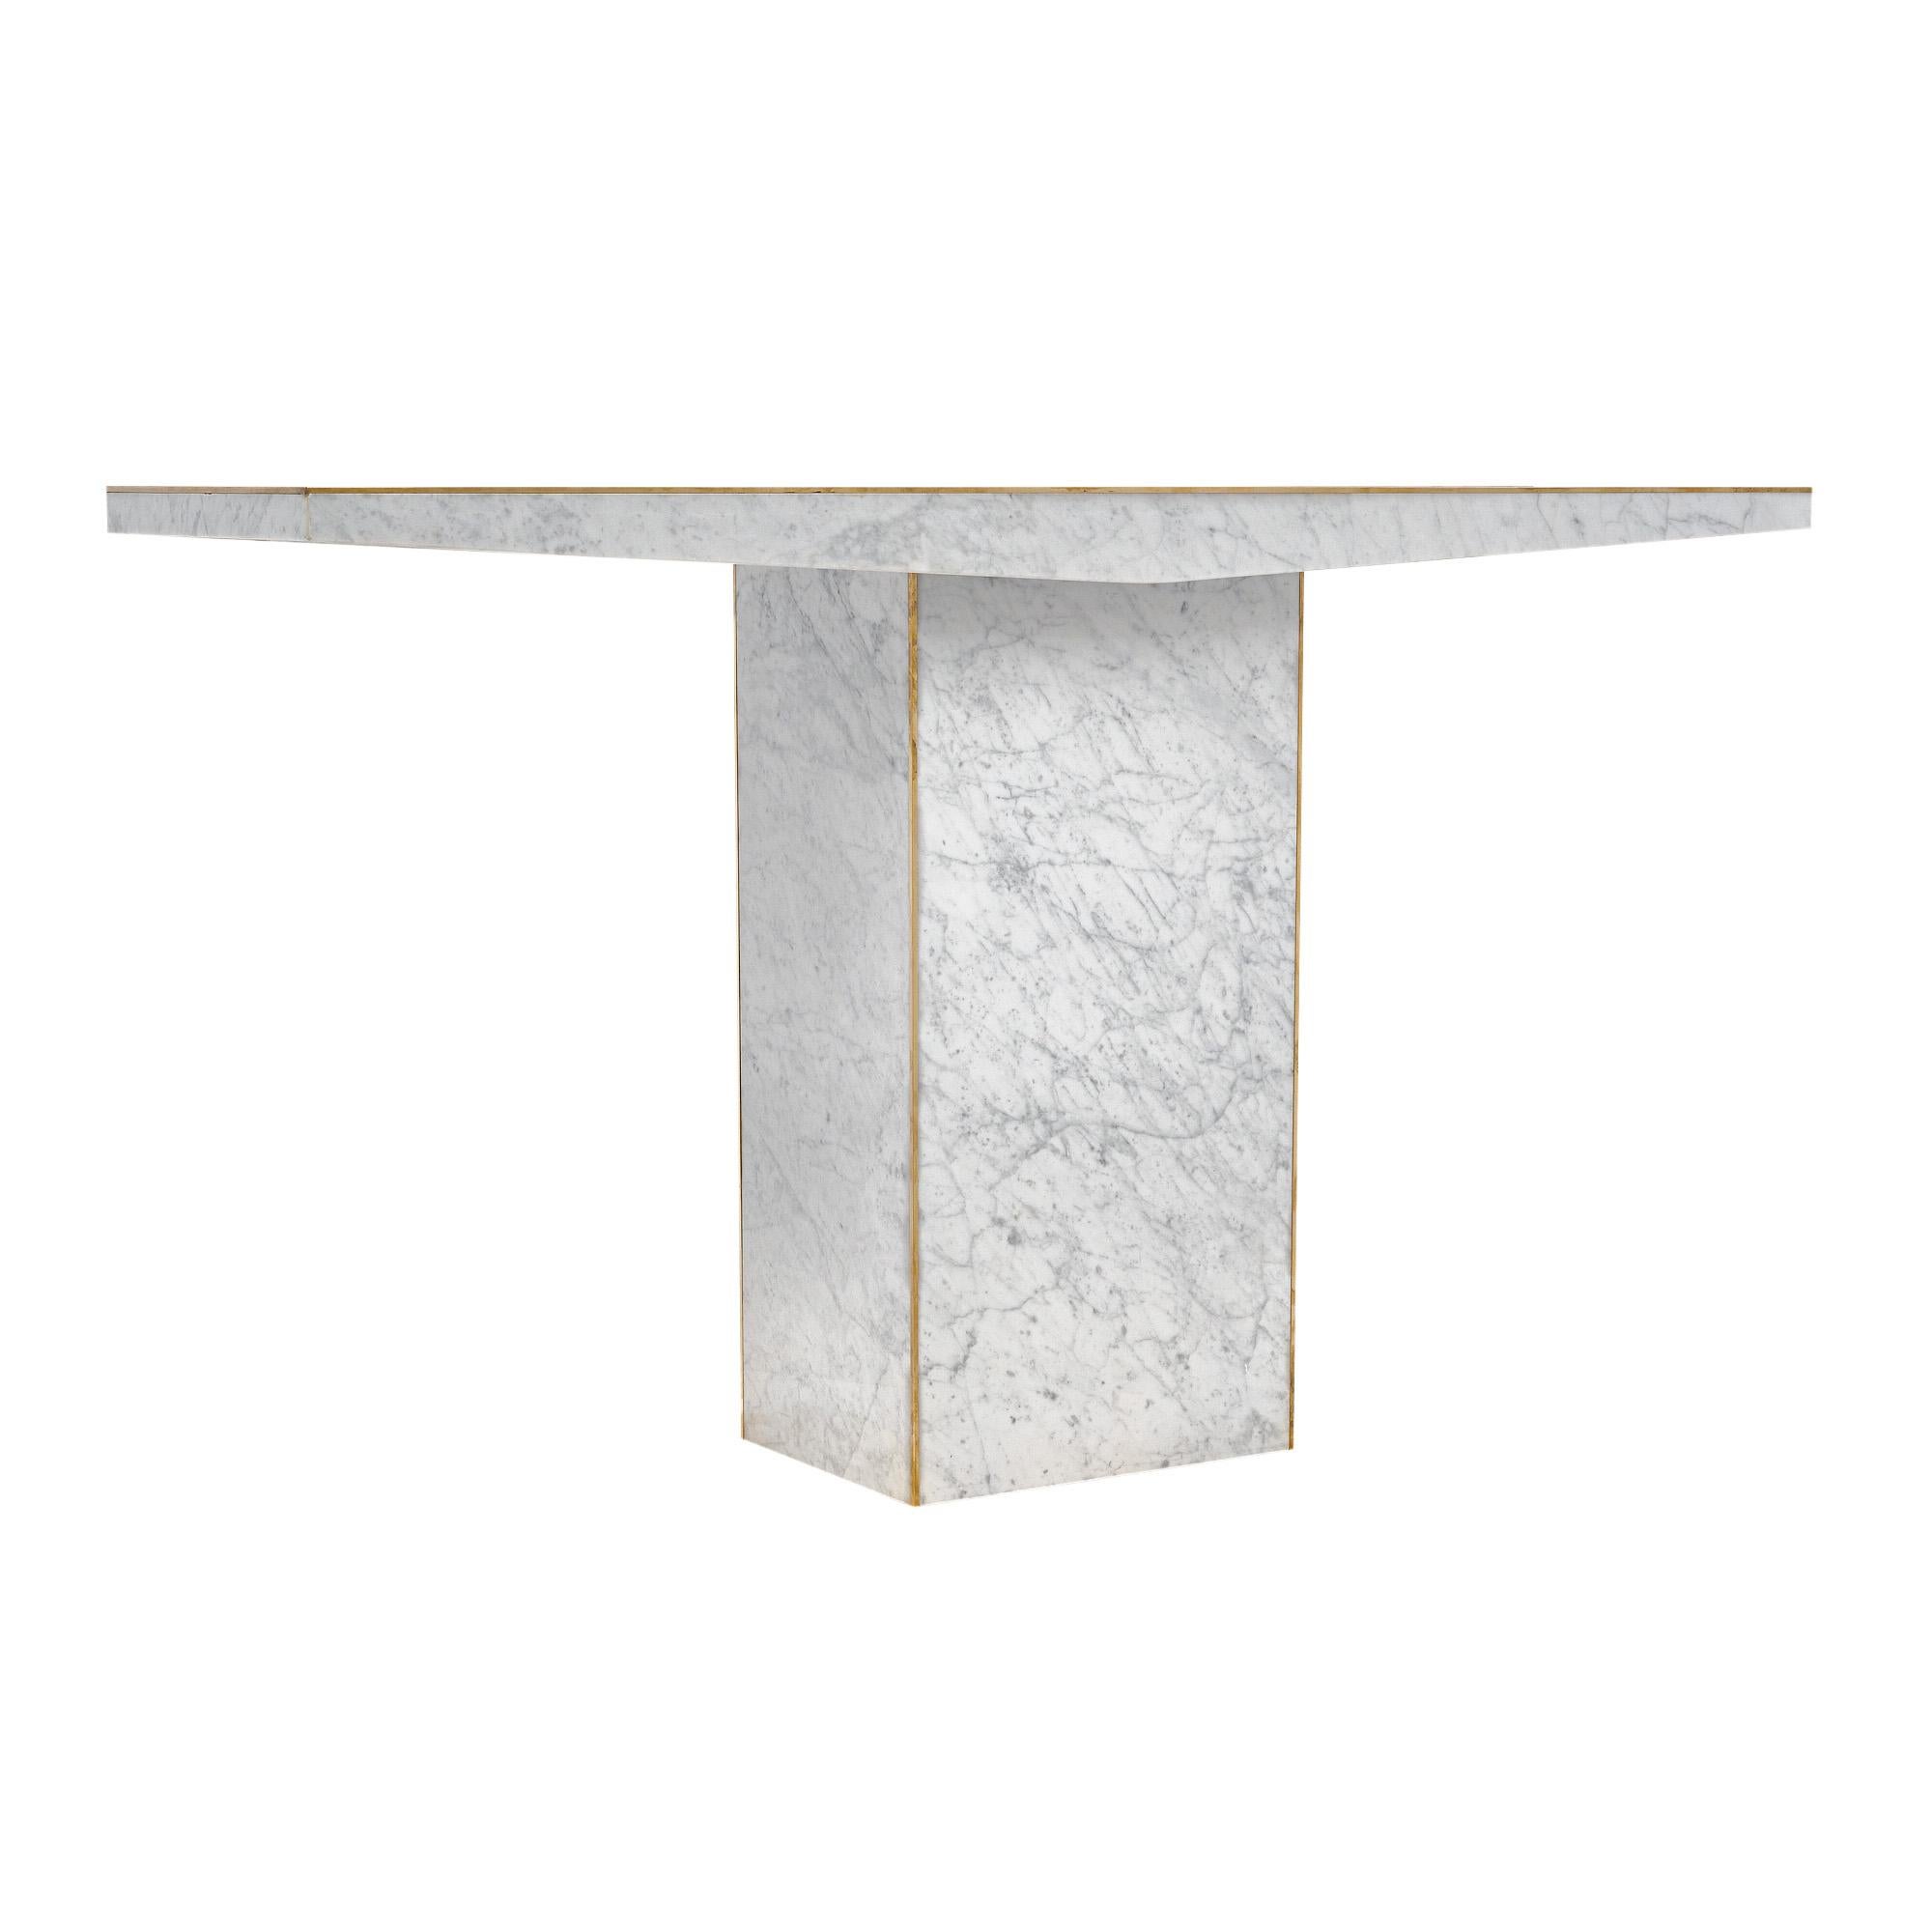 Ein Paar Konsolentische aus Italien im Stil der Jahrhundertmitte. Jeder Tisch hat einen rechteckigen Sockel mit einer stilisierten, einteiligen Carrara-Plattenplatte. Messingverzierungen sorgen für einen glamourösen Touch. Der Preis ist für das